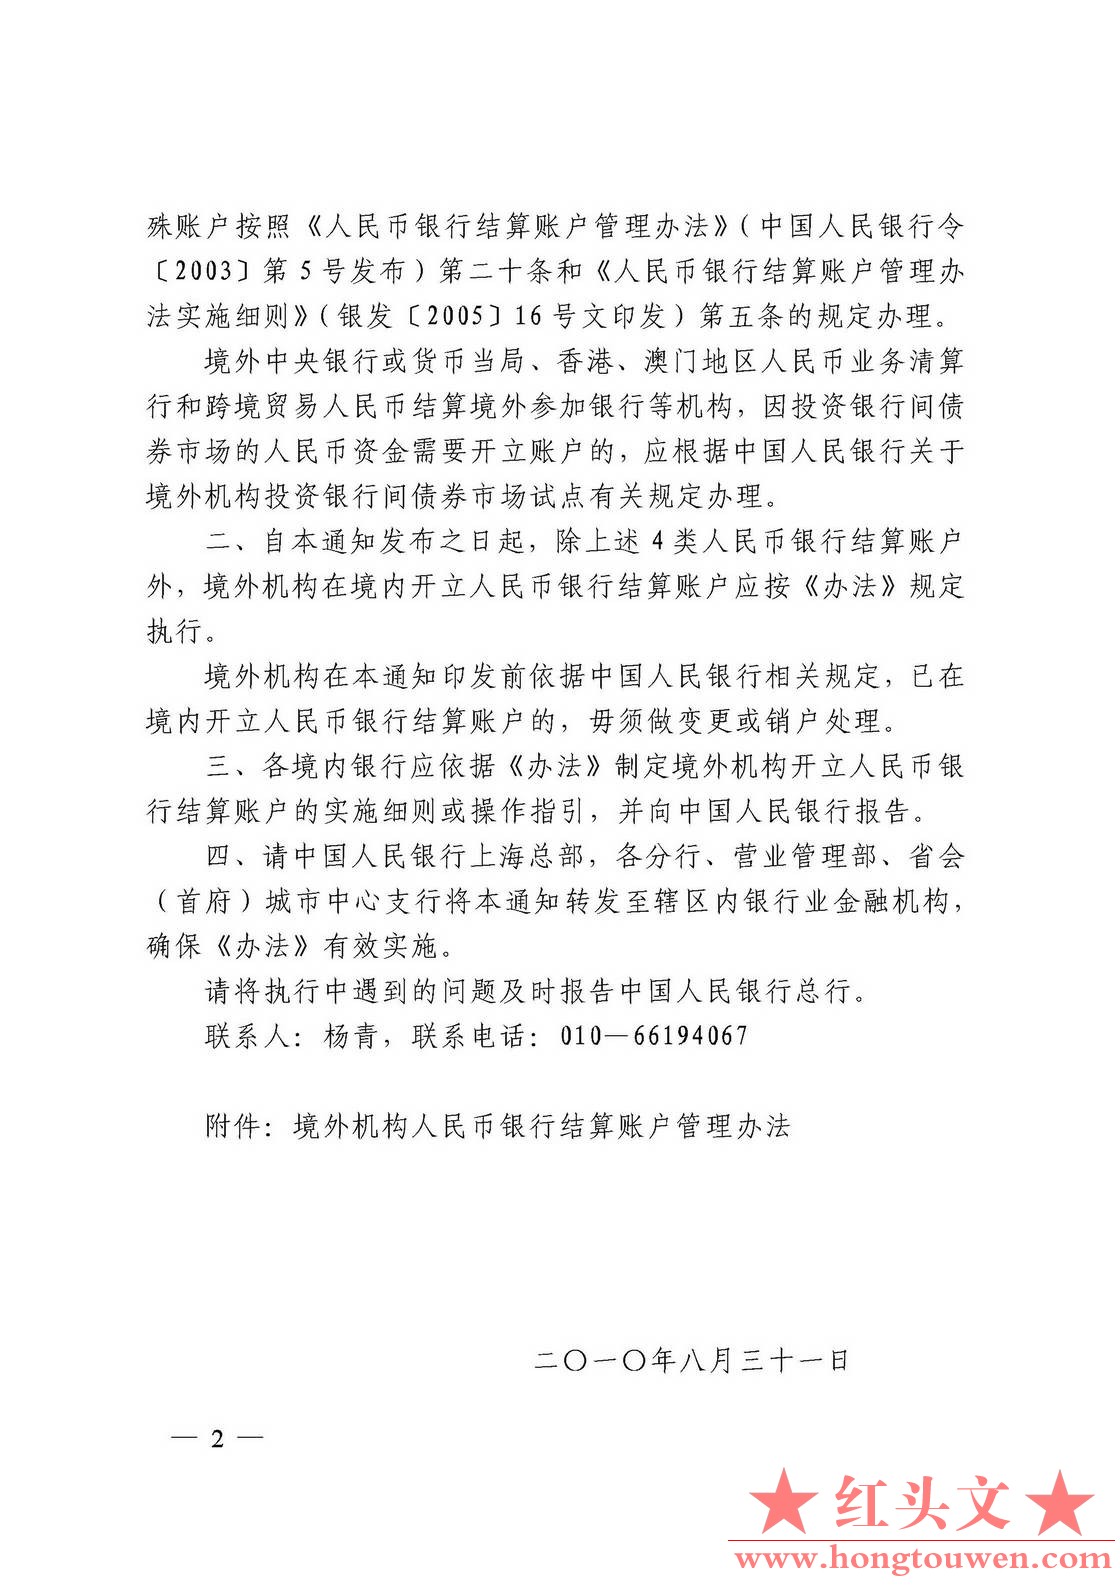 银发[2010]249号-中国人民银行关于印发《境外机构人民币银行结算账户管理办法》的通知.jpg